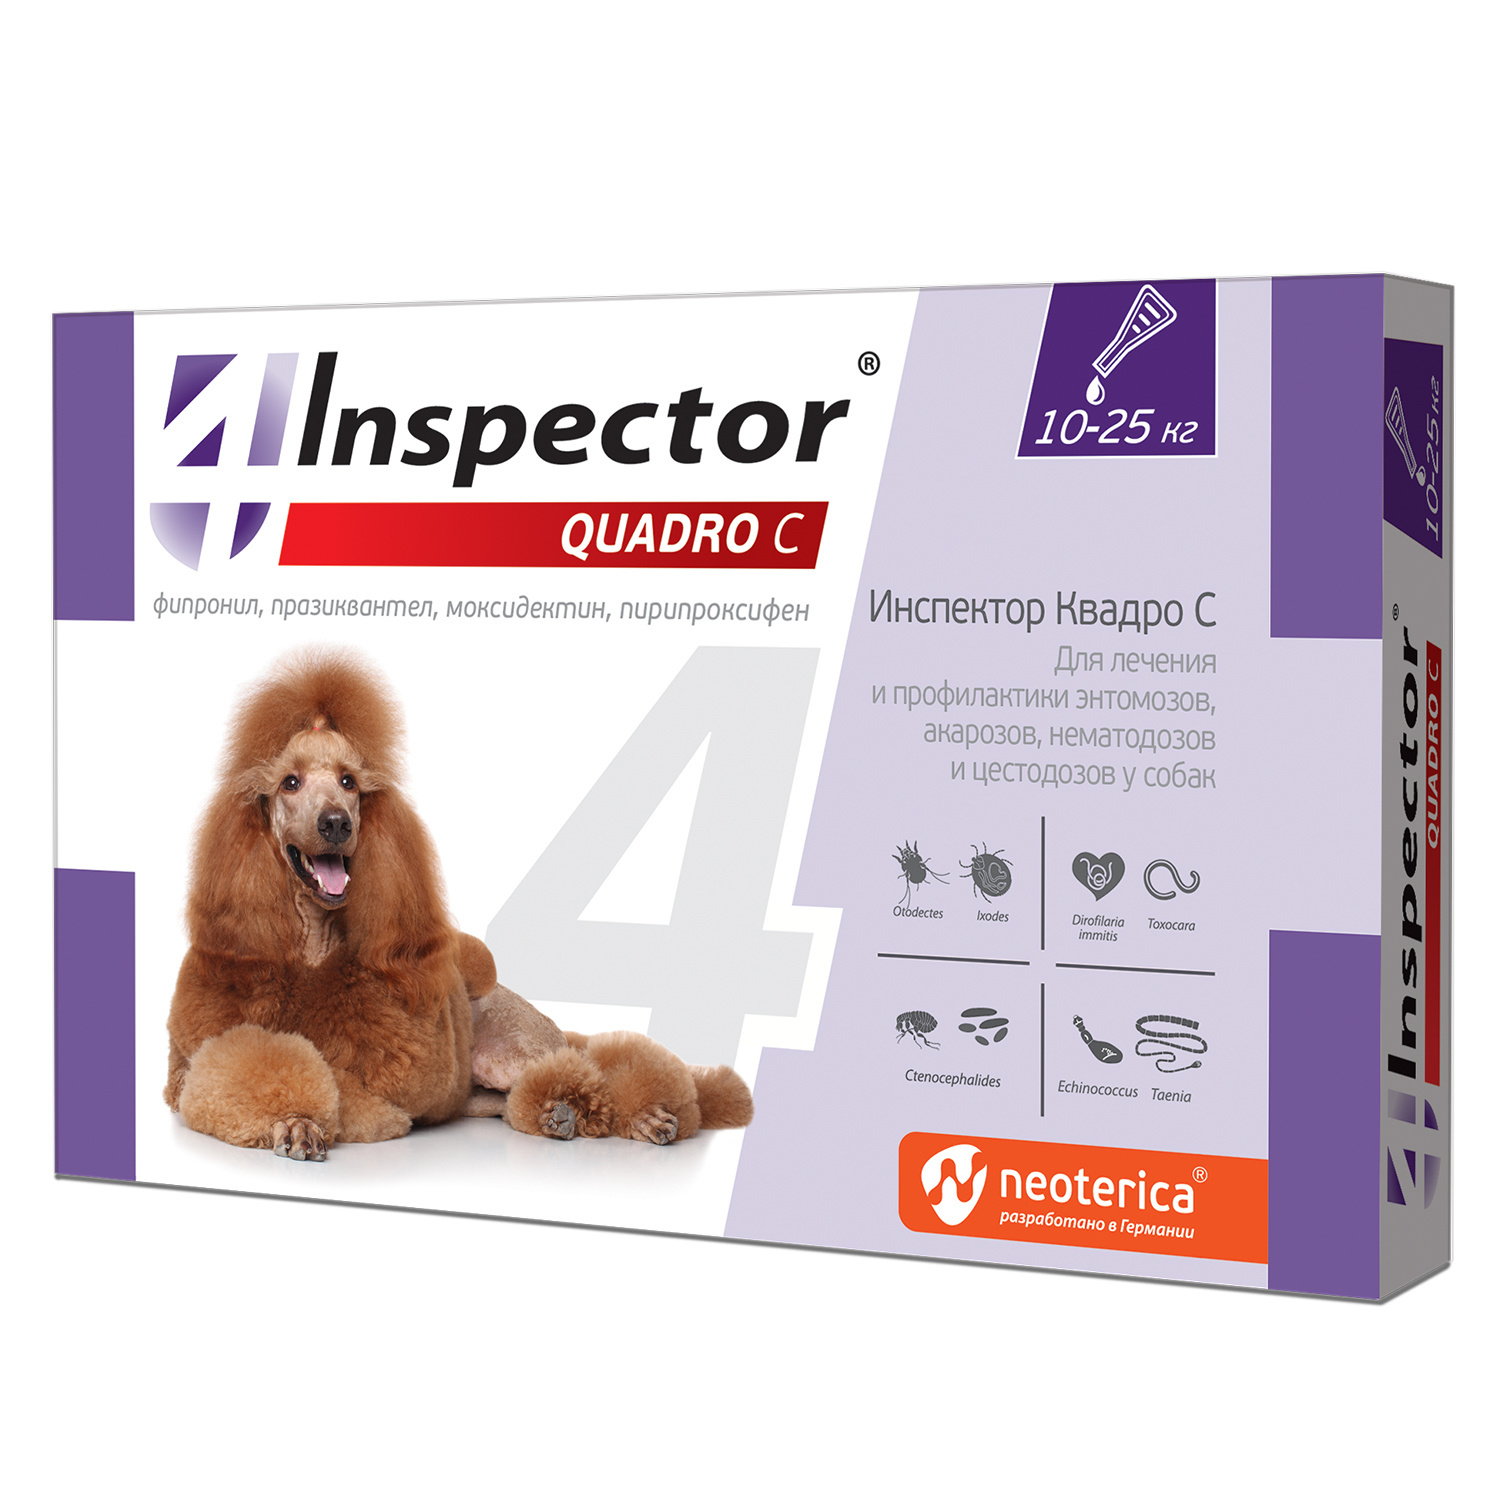 Inspector quadro капли на холку для собак весом 10-25 кг от клещей, насекомых, глистов (20 г)